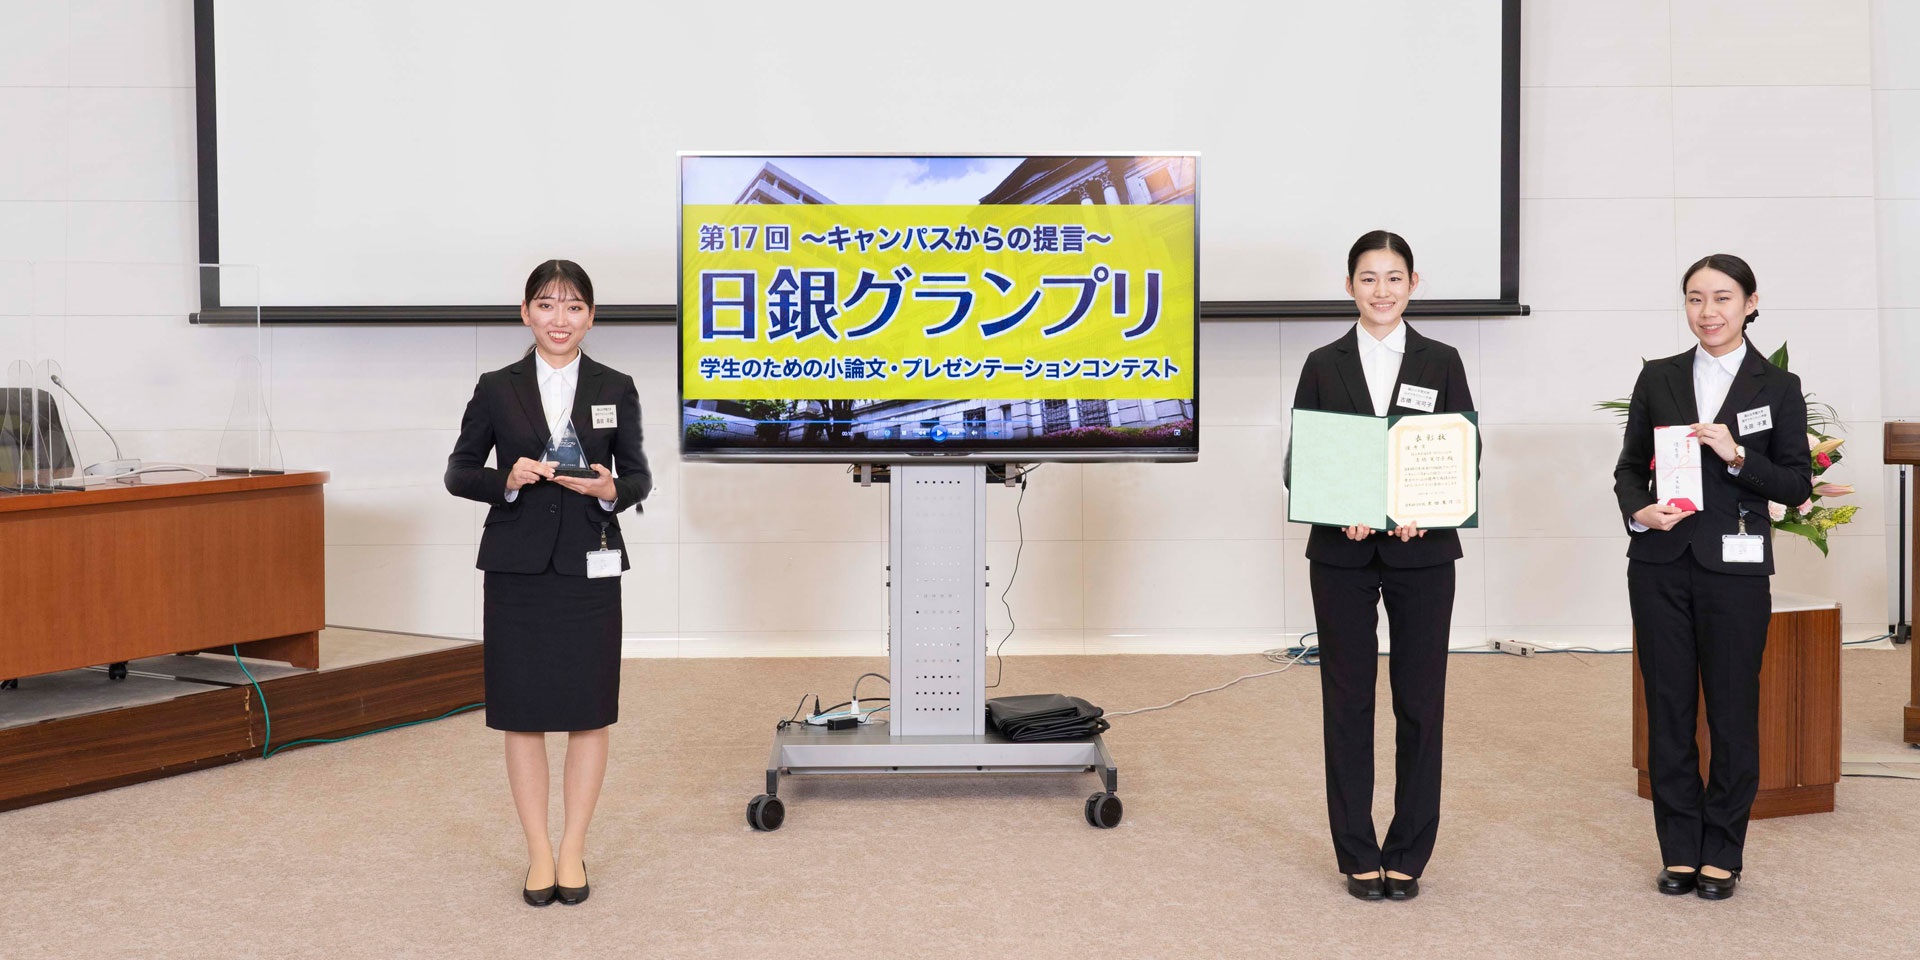 椙山女学園大学チームの学生3人が、間隔を空けて横一列に起立して記念撮影している様子